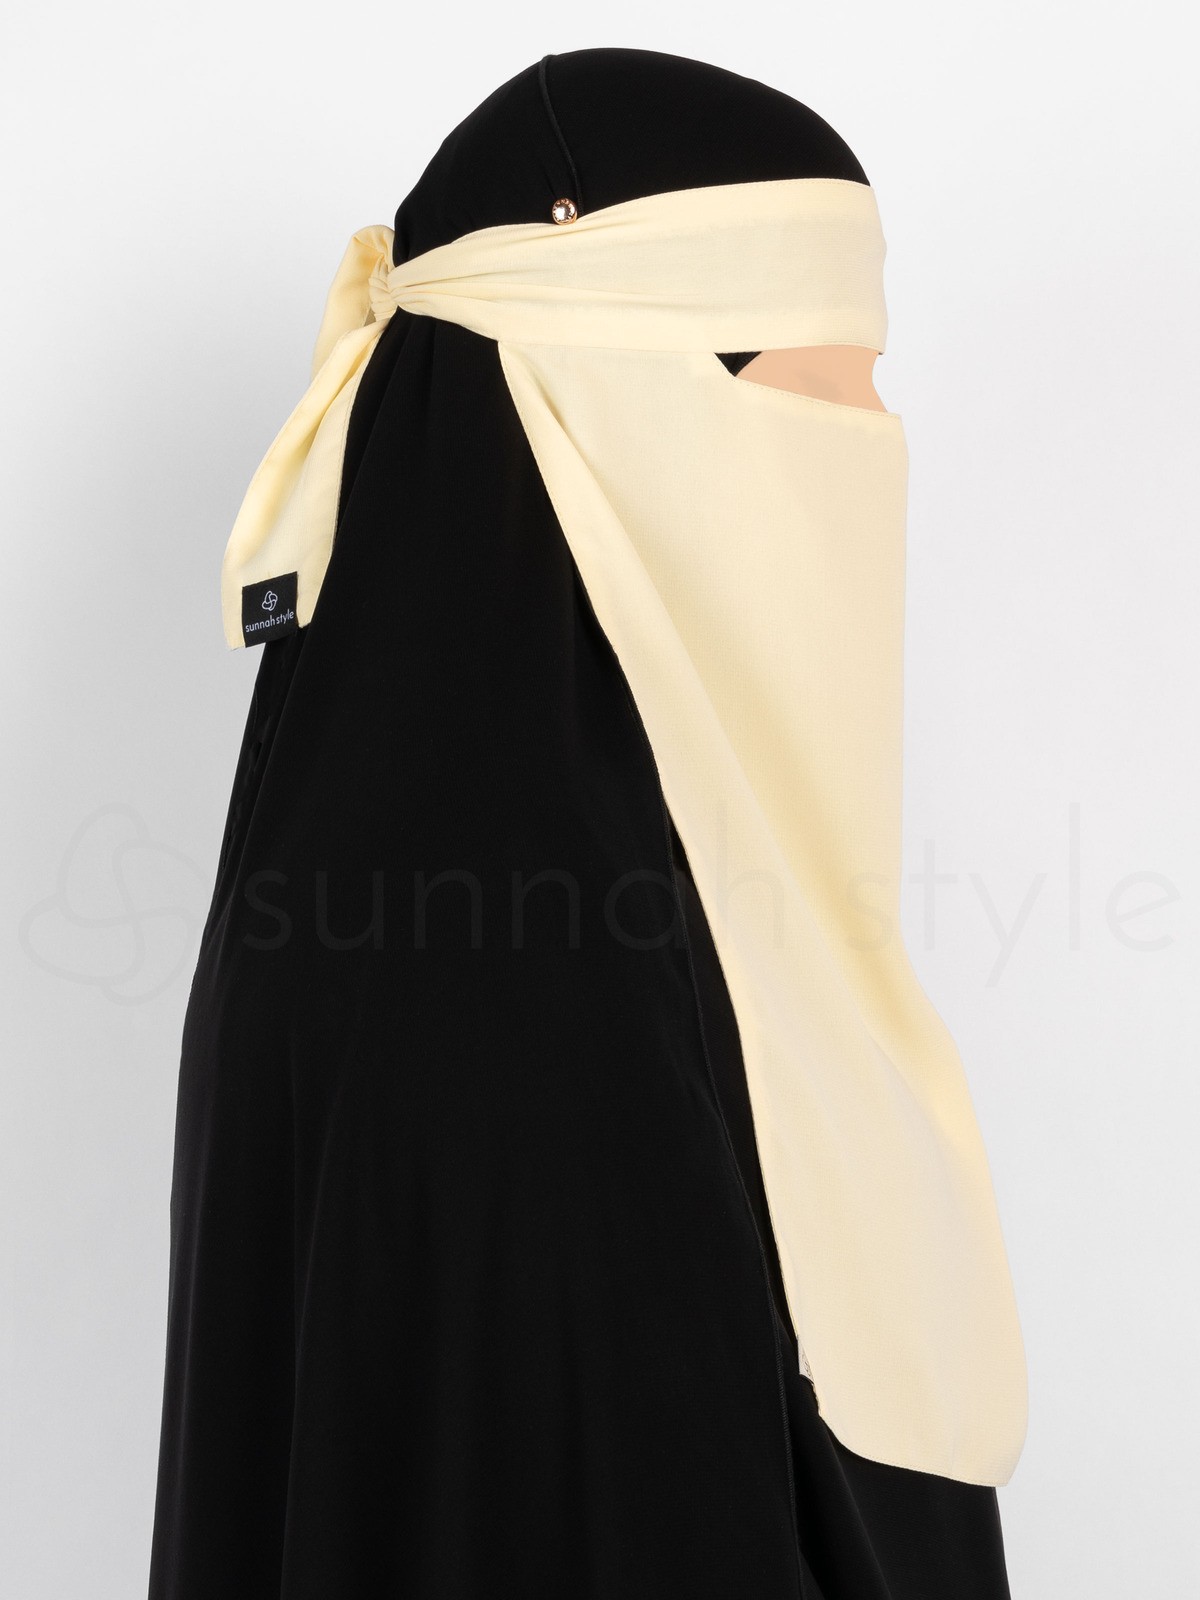 Sunnah Style - Narrow No-Pinch One Layer Niqab (Vanilla Cream)